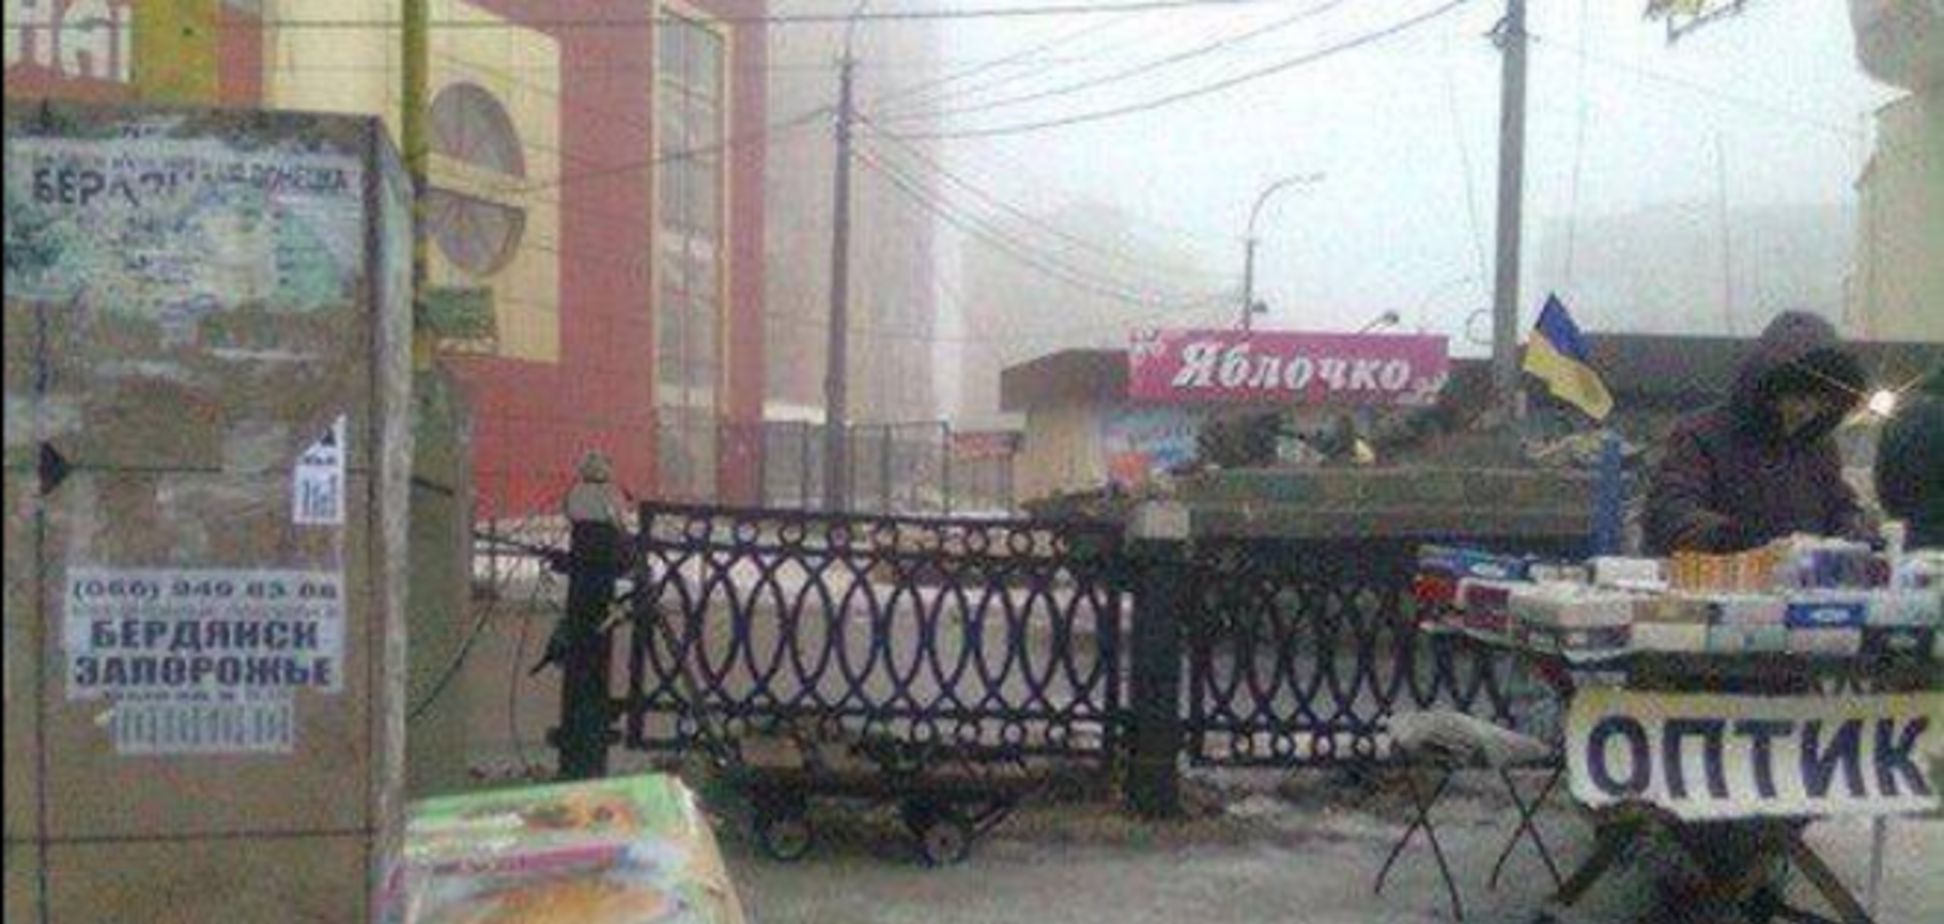 Террористы в Макеевке одели на БМП украинский флаг: вероятно, готовят новый обстрел мирных жителей. Фотофакт